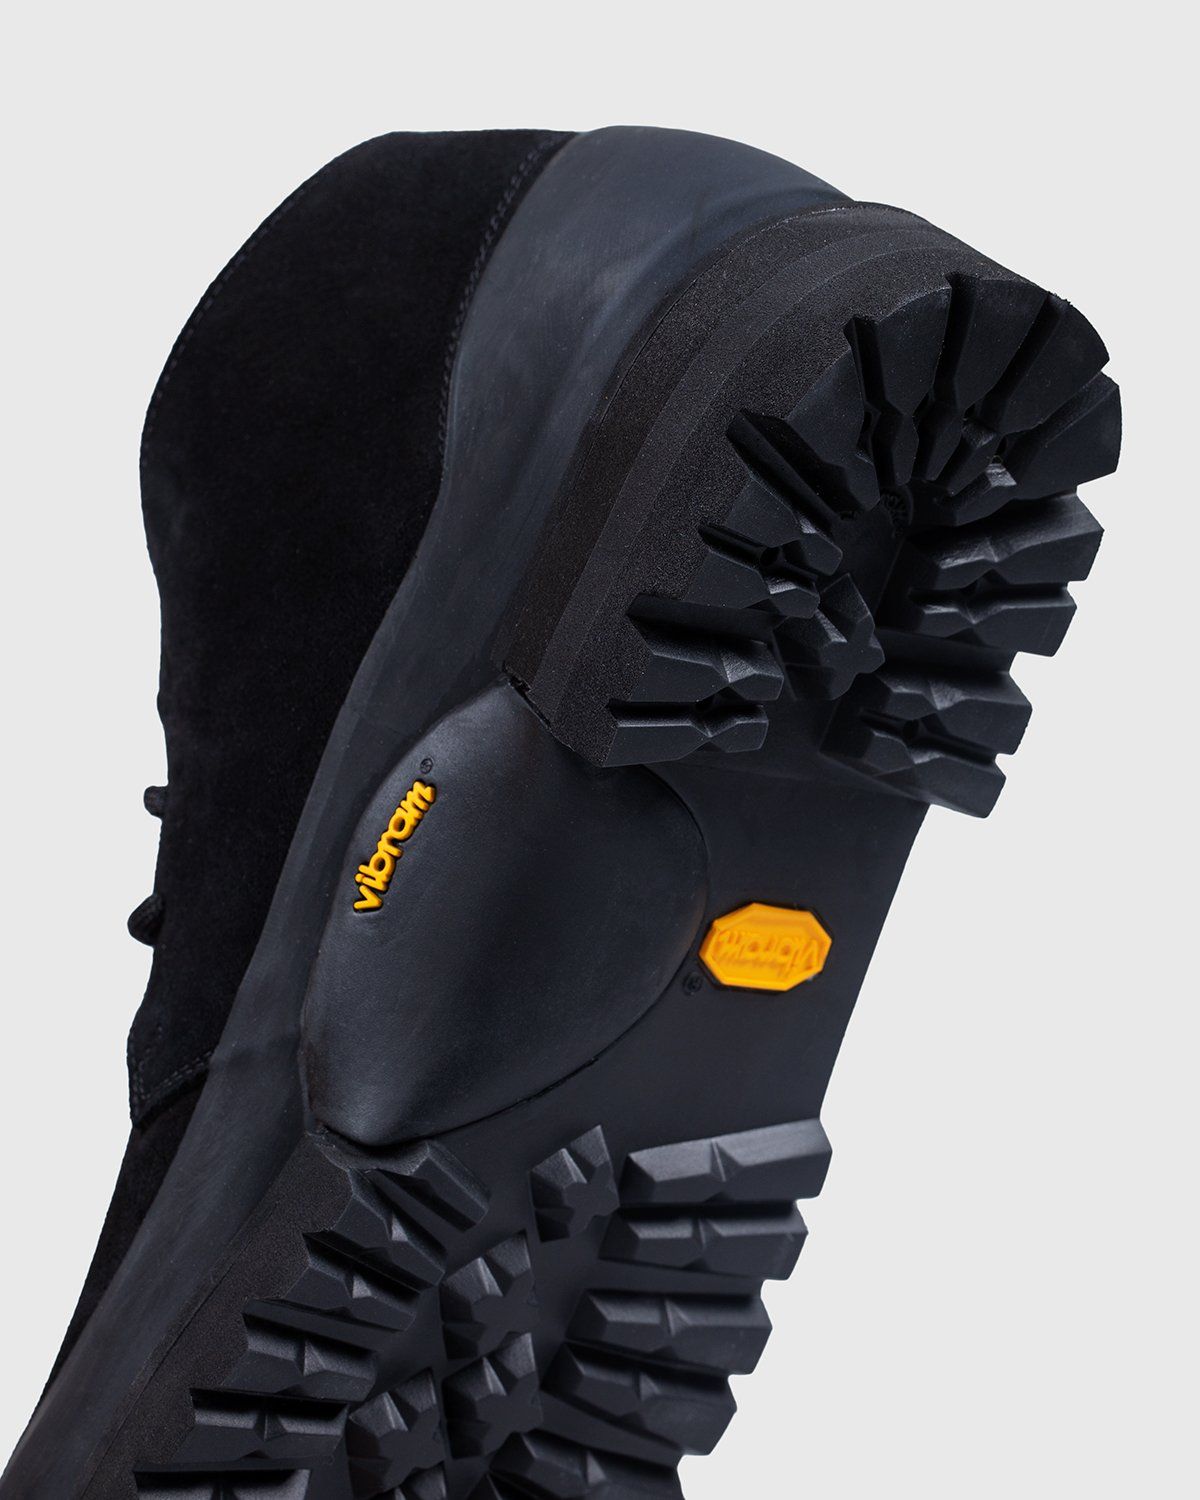 Diemme – Asiago Black Suede - Shoes - Black - Image 5